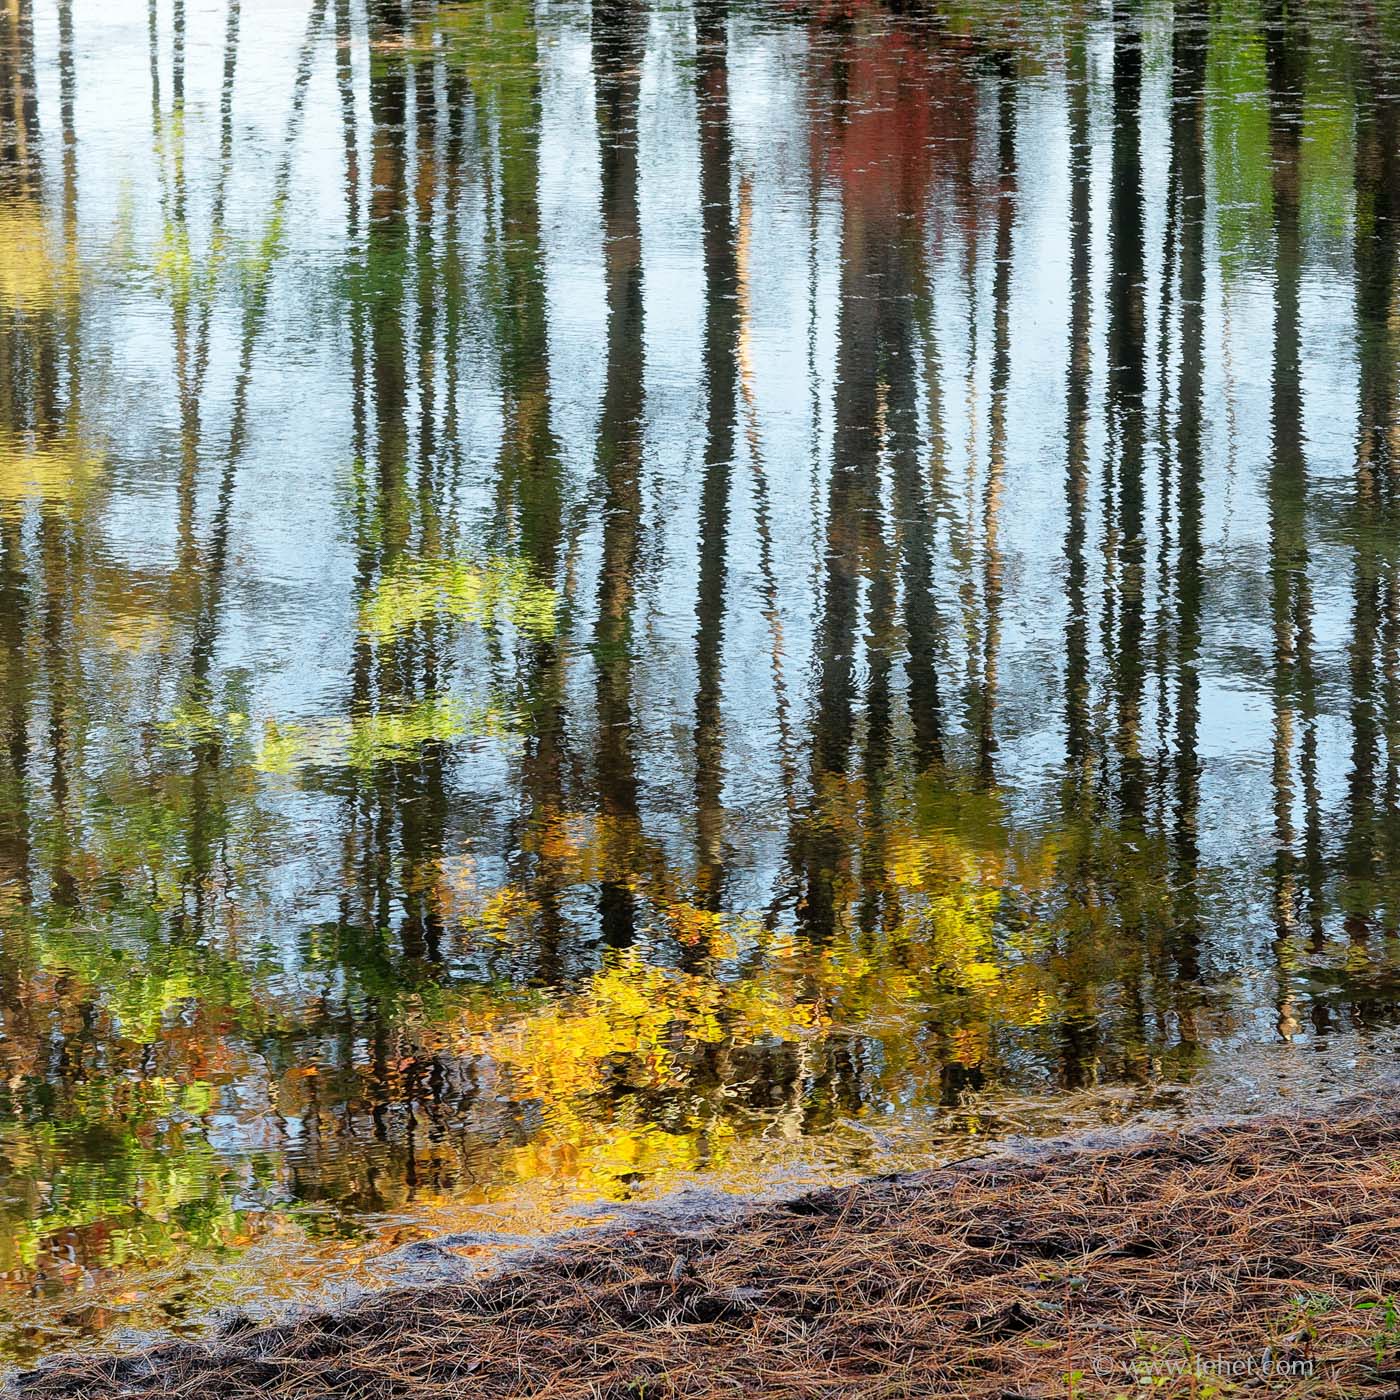 Pond in Woods, Hartland Vermont, October 2014